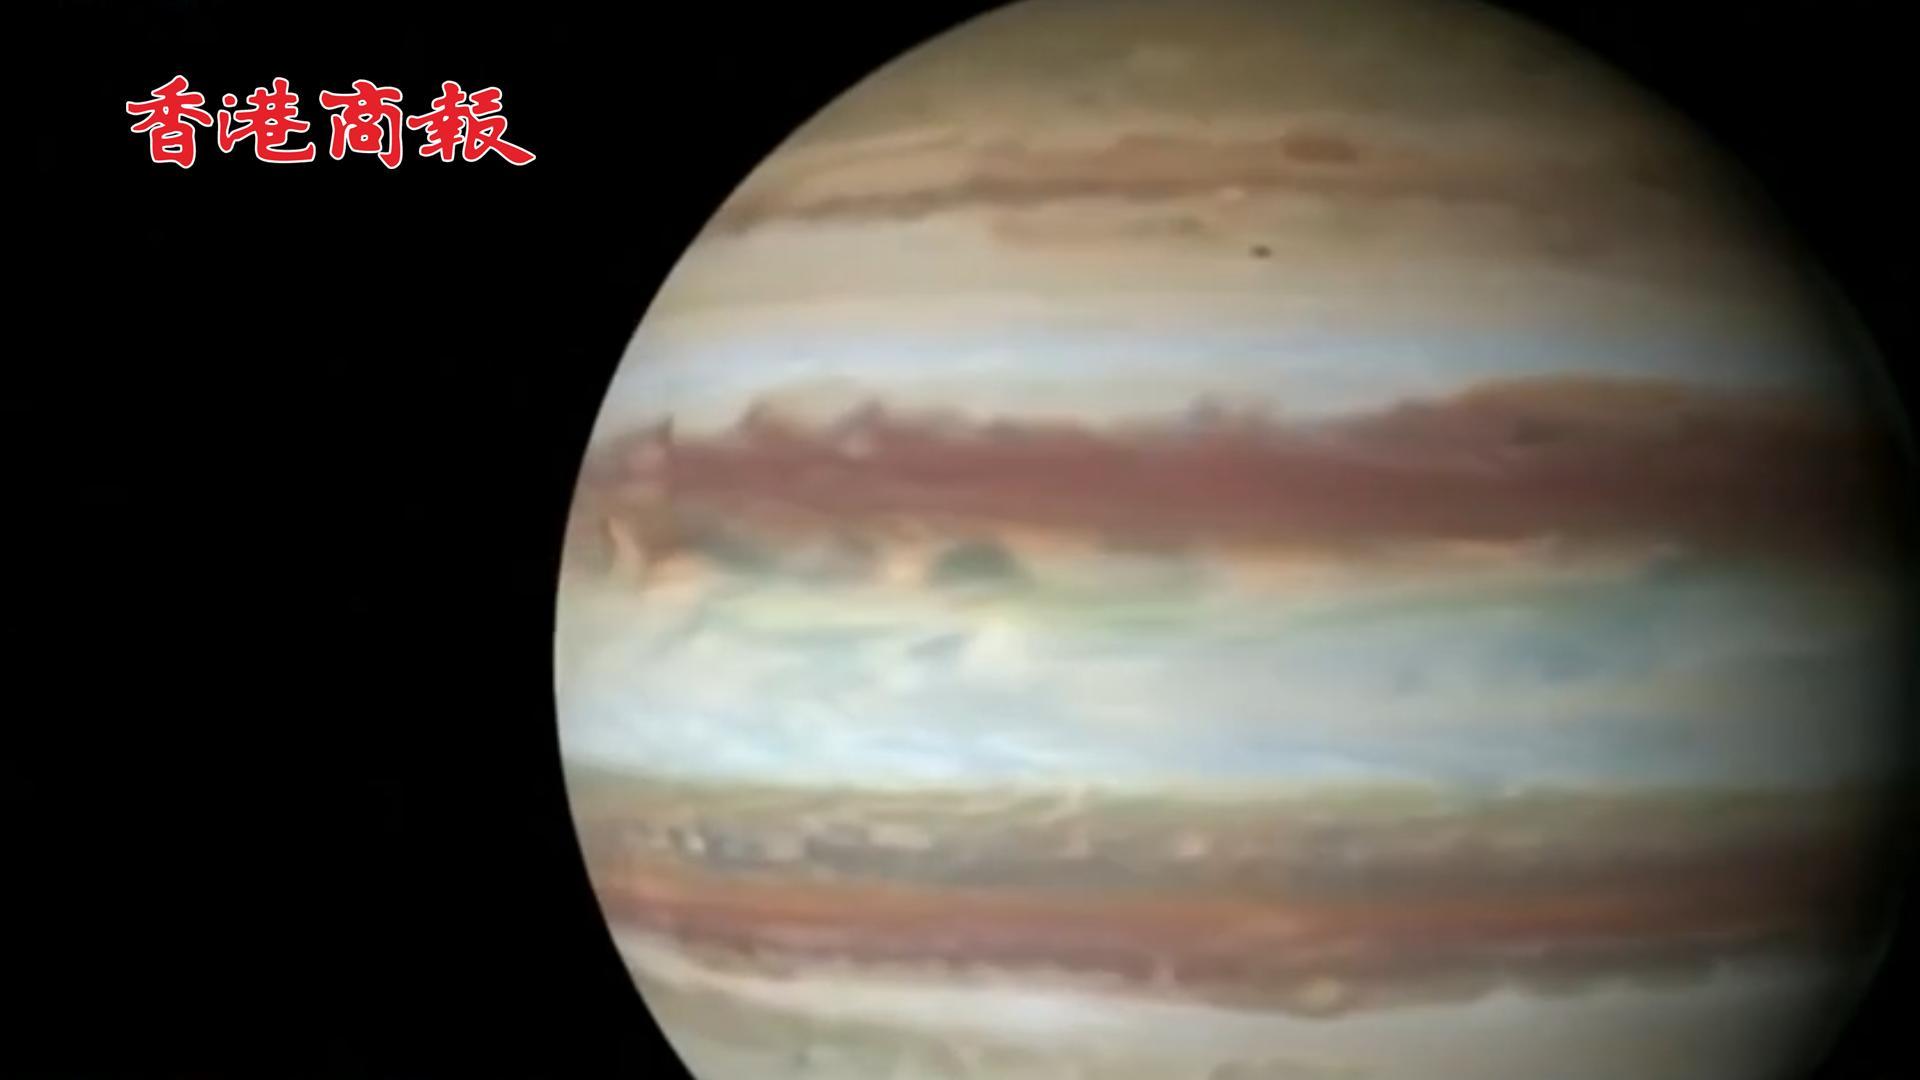 有片 | 9月將上演「木星沖日」天象 錯過要再等一百多年